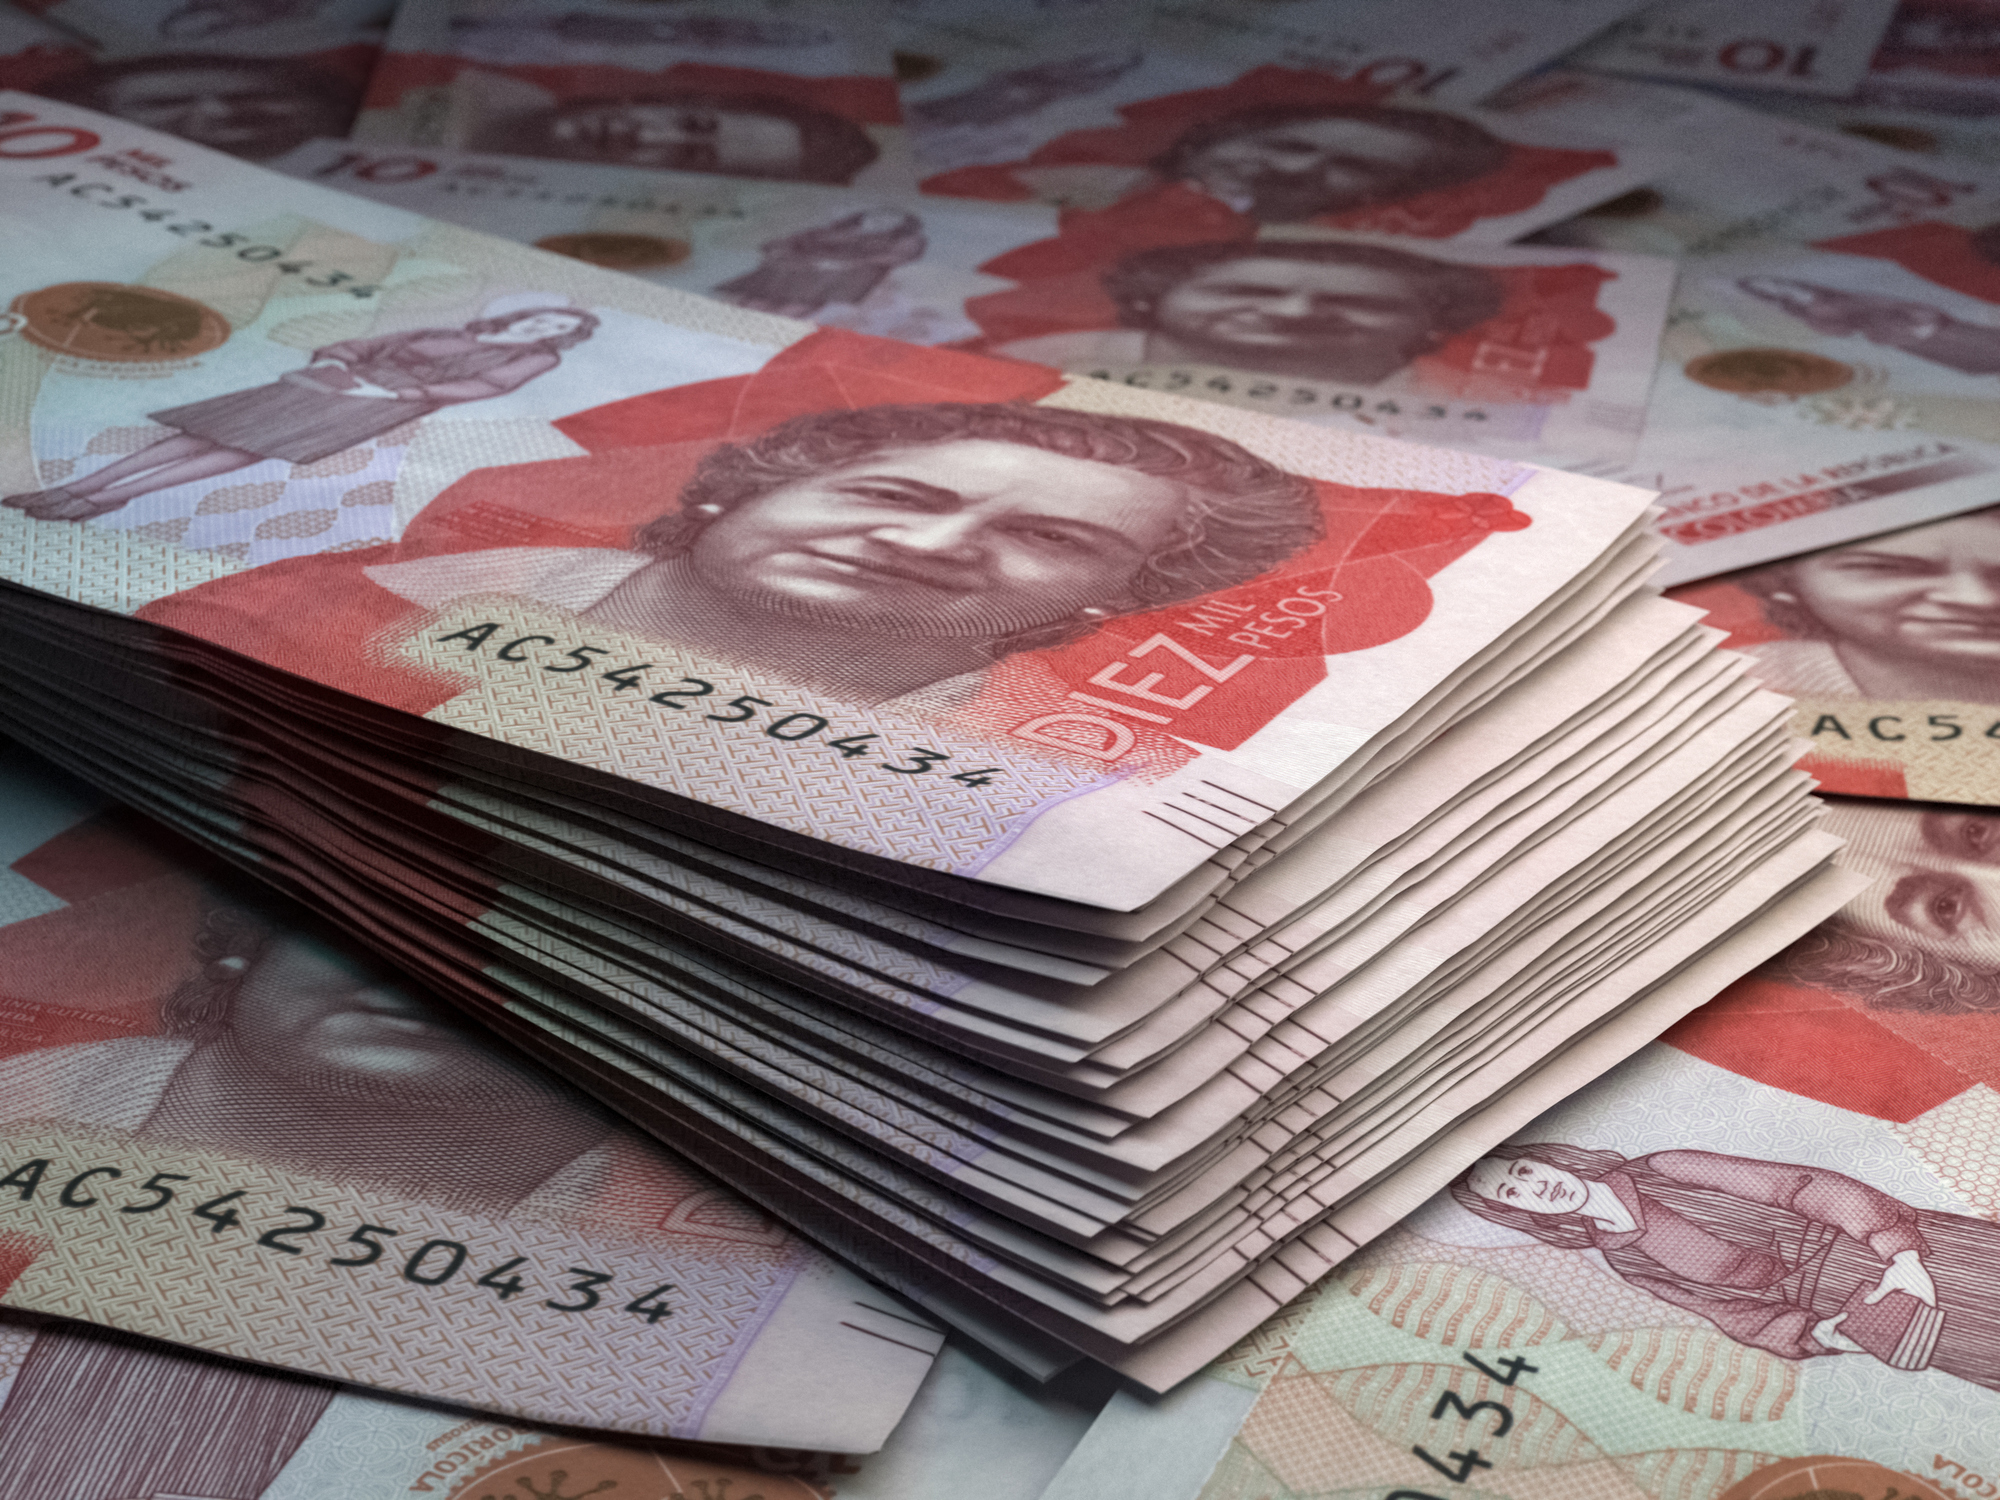 Dinero de Colombia: quién es la mujer que aparece en el billete de 10.000 pesos y por qué es tan importante